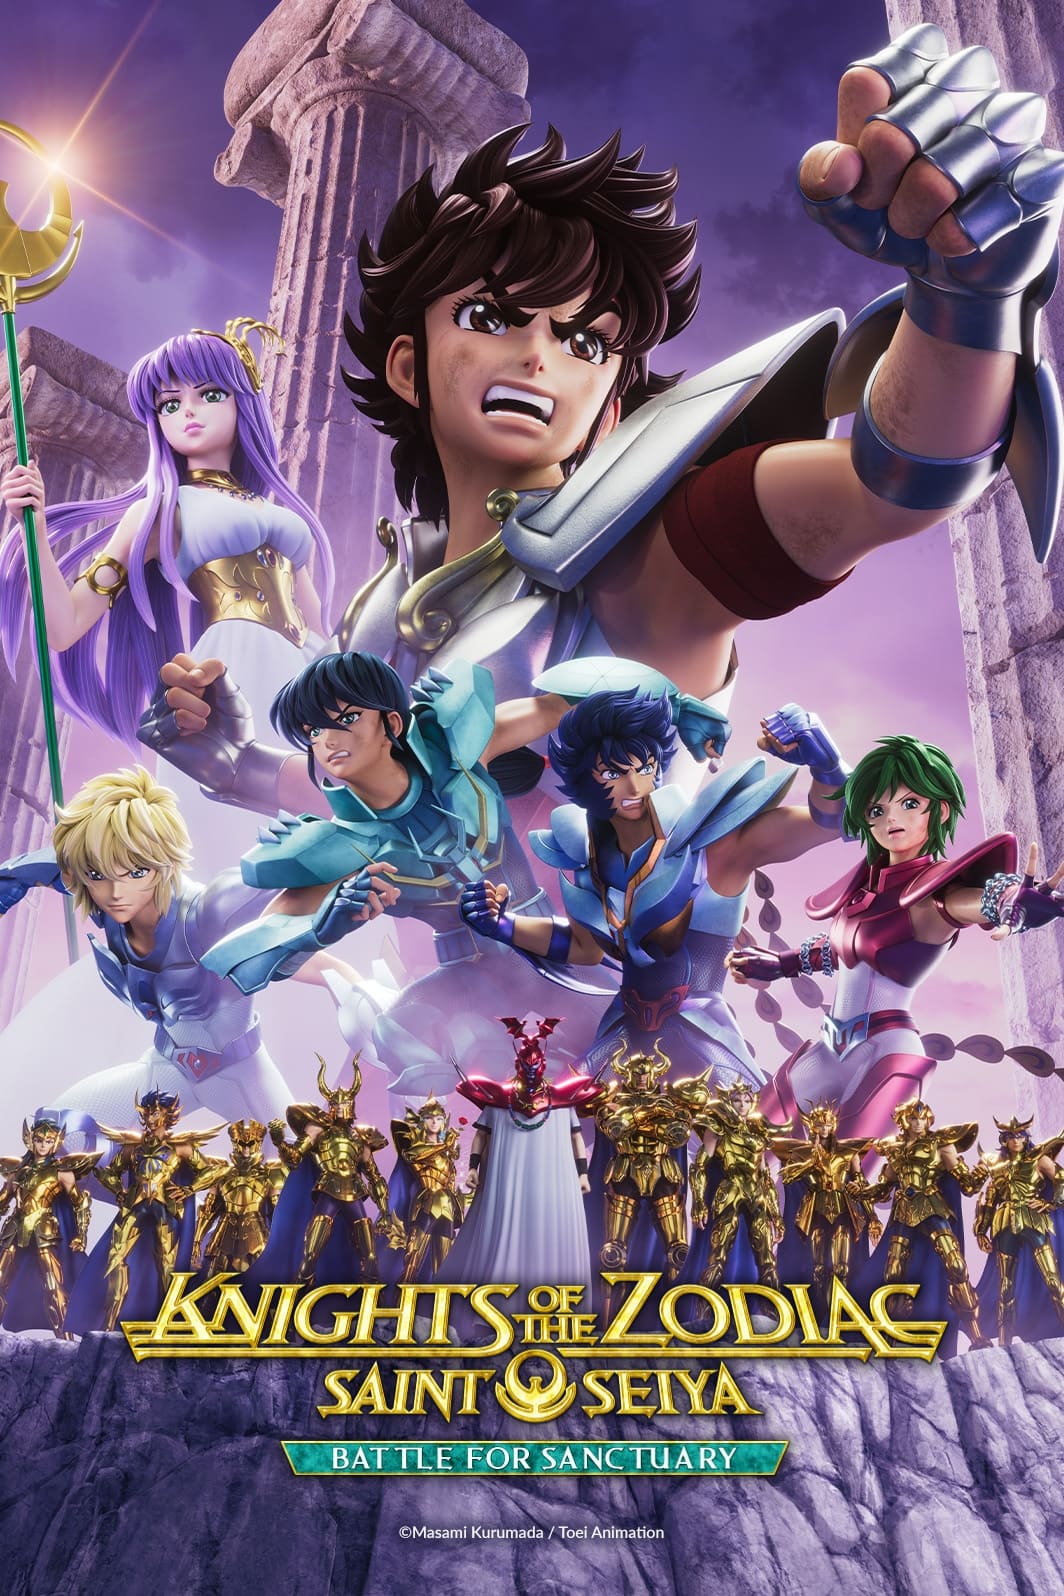 SAINT SEIYA: Knights of the Zodiac Season 2